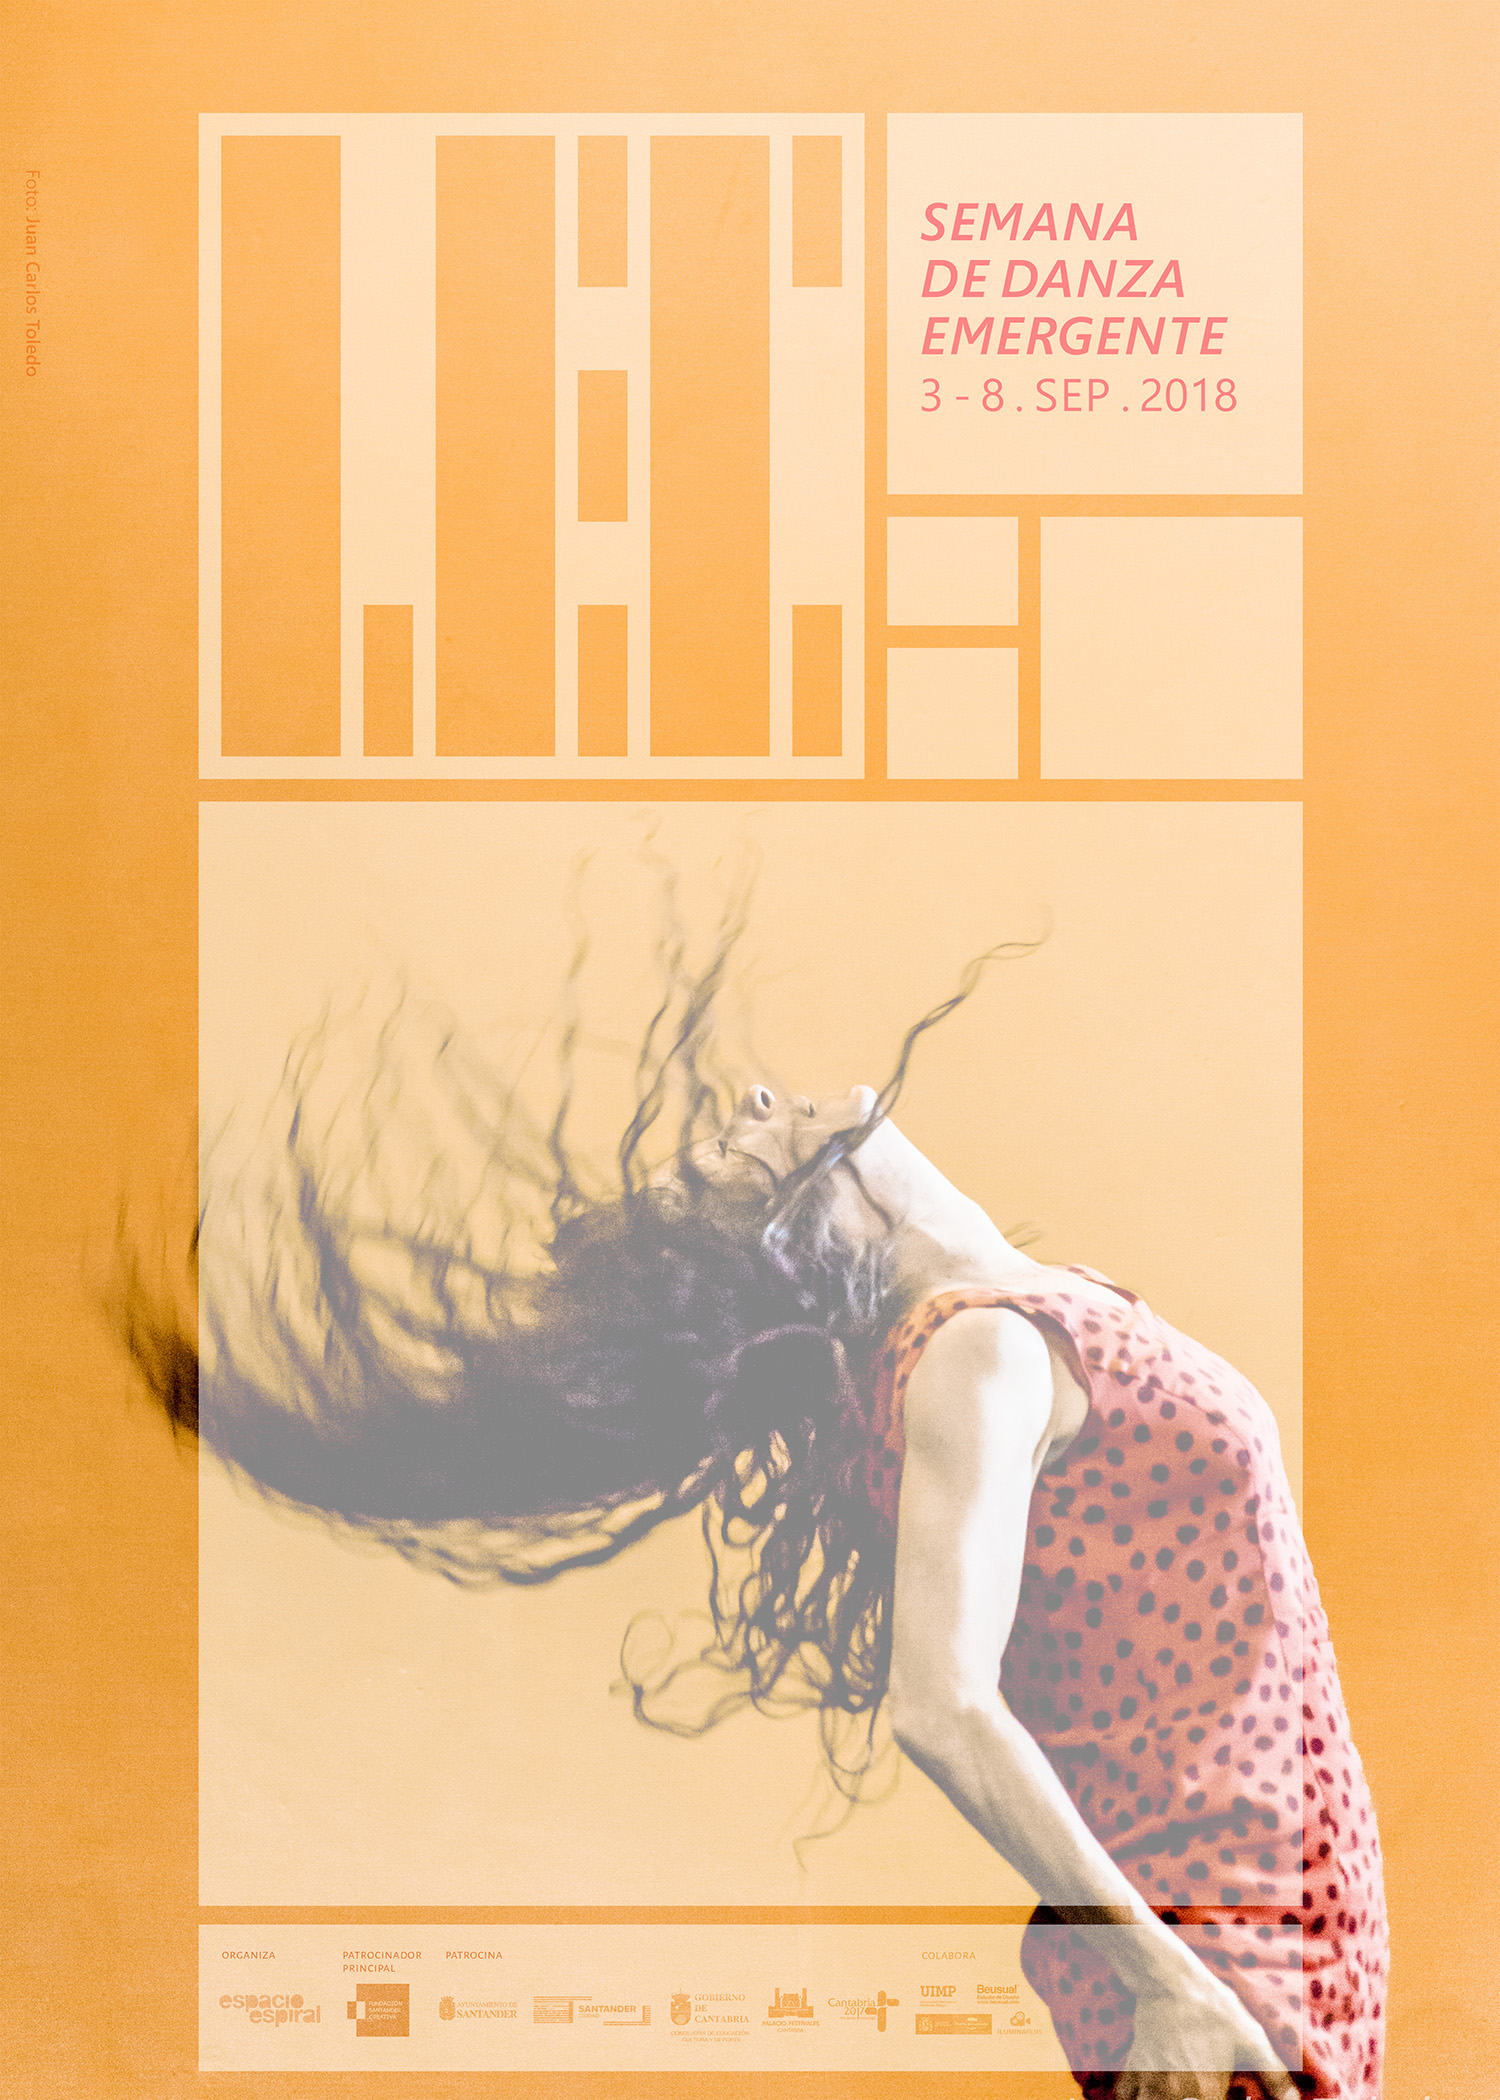 branding for festival - LEC 2018 - la espiral contemporanea - danza santander (3)